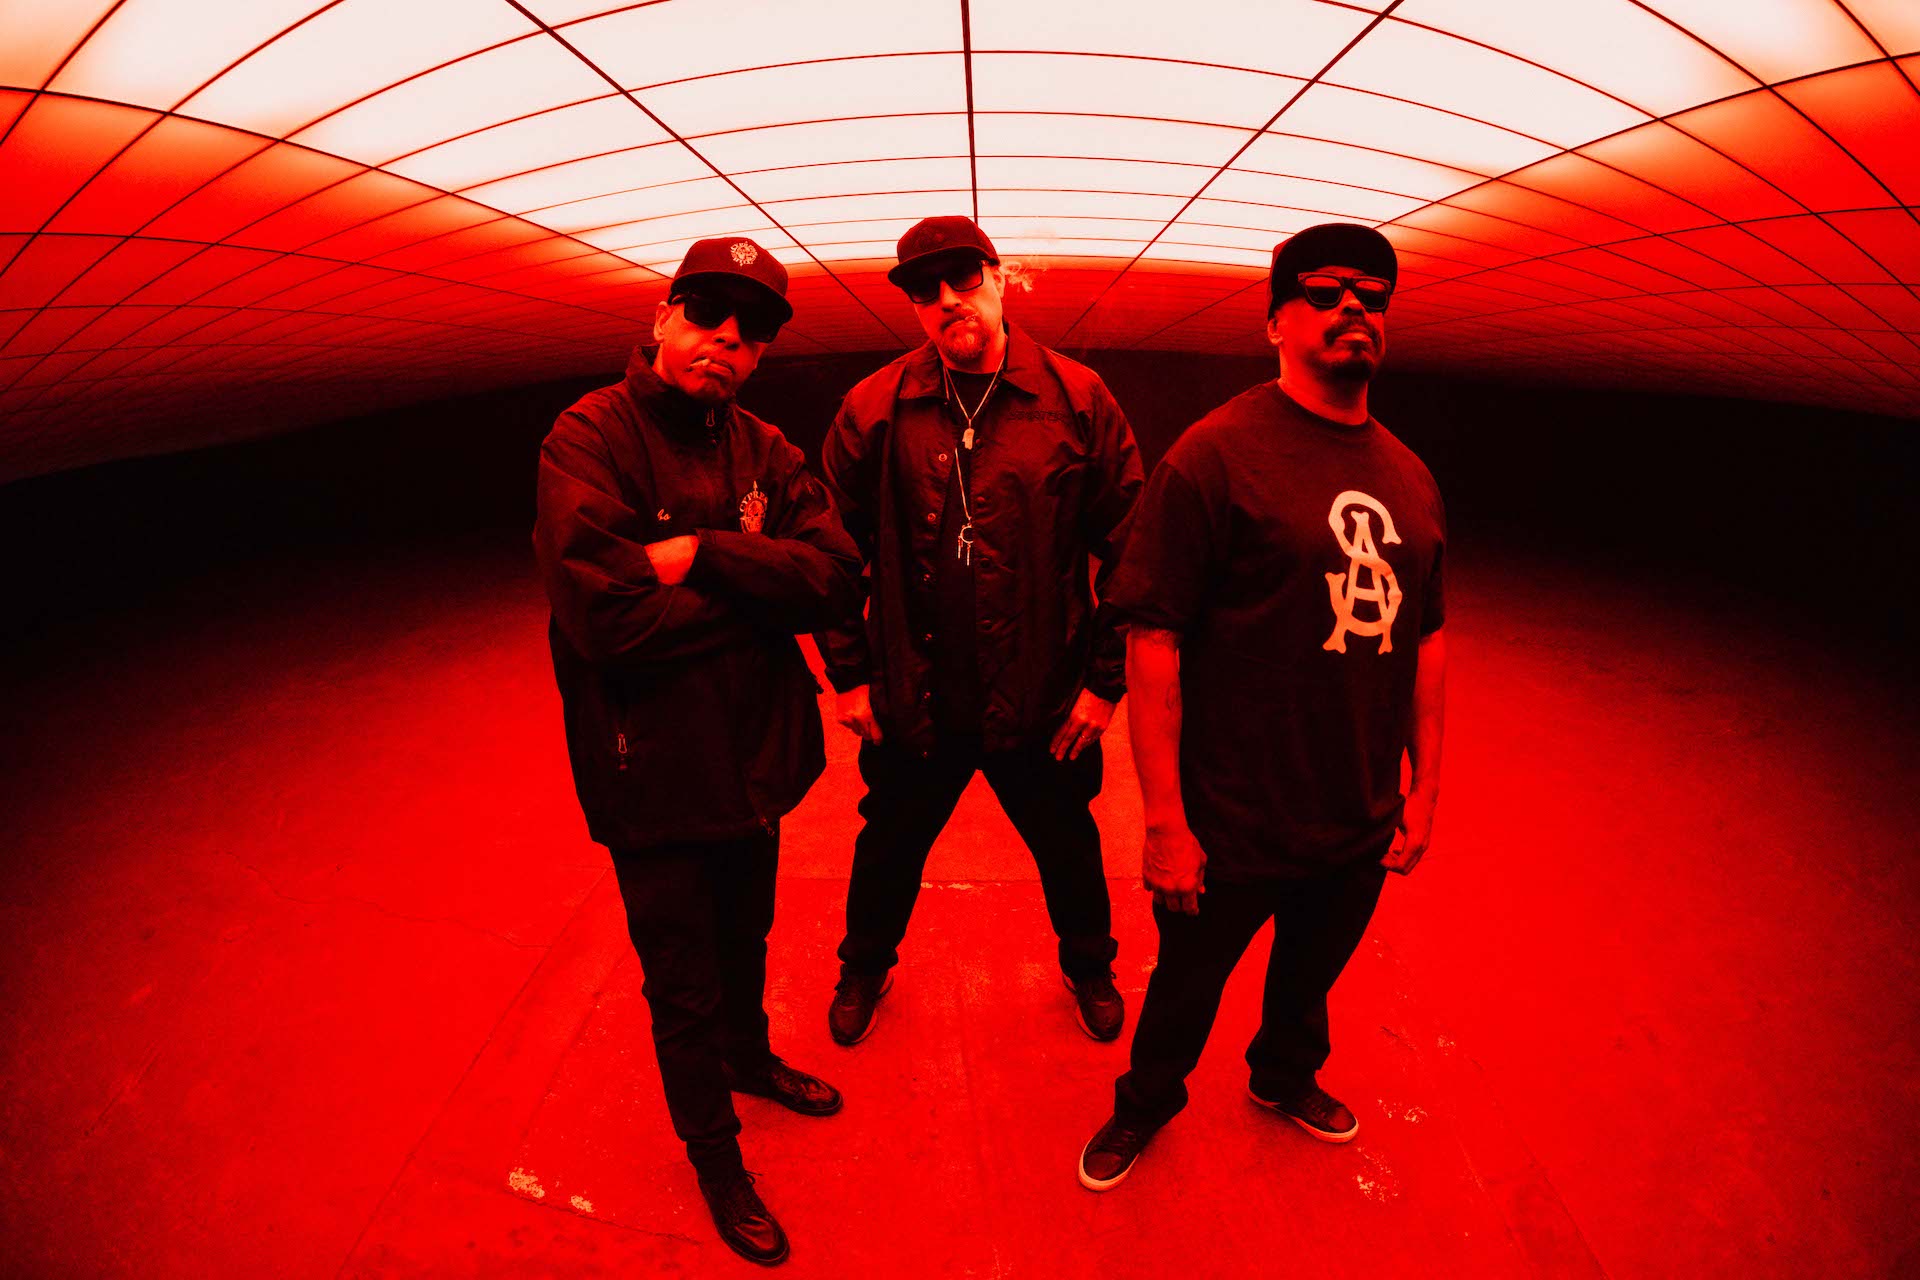 Die drei Rapper von Cypress Hill posen in rotes Licht getaucht unter einem Fester und sind ganz in Schwarz gekleidet.